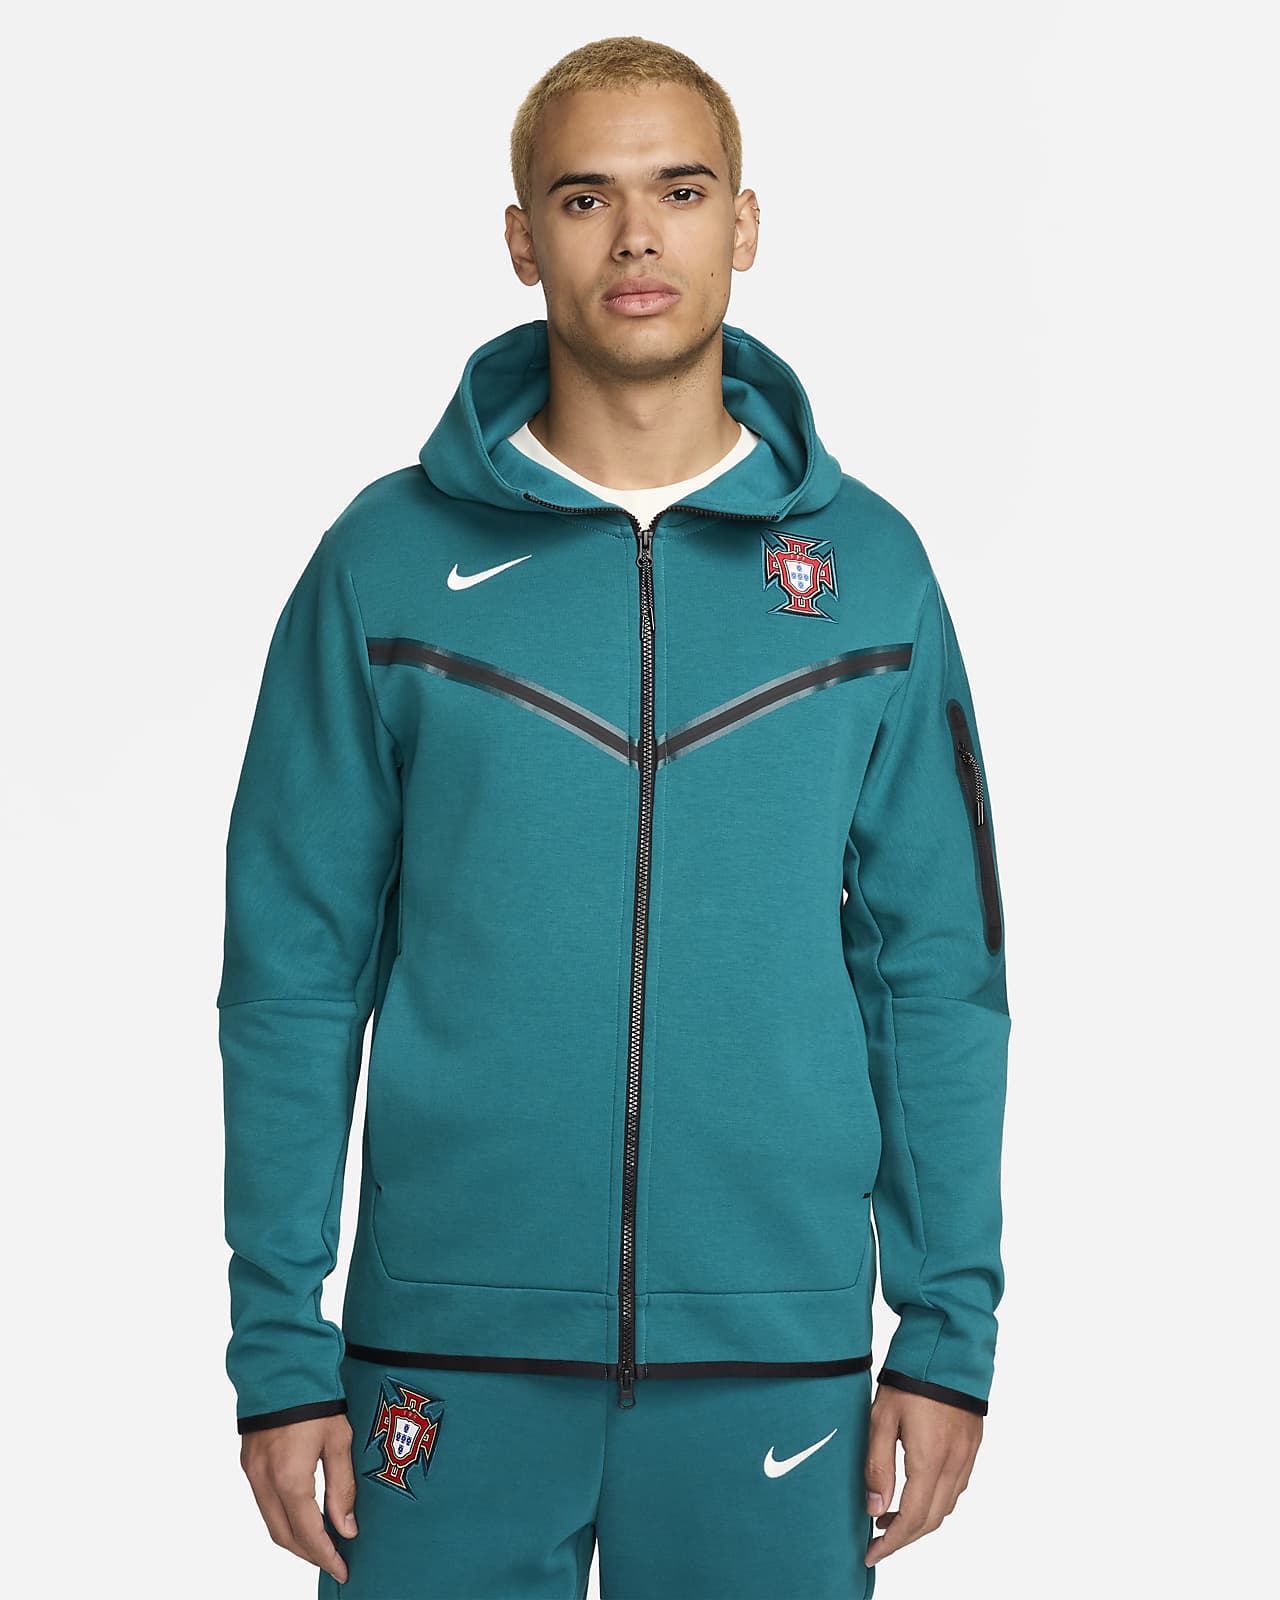 Ανδρική ποδοσφαιρική μπλούζα με κουκούλα και φερμουάρ σε όλο το μήκος Nike Πορτογαλία Tech Fleece Windrunner